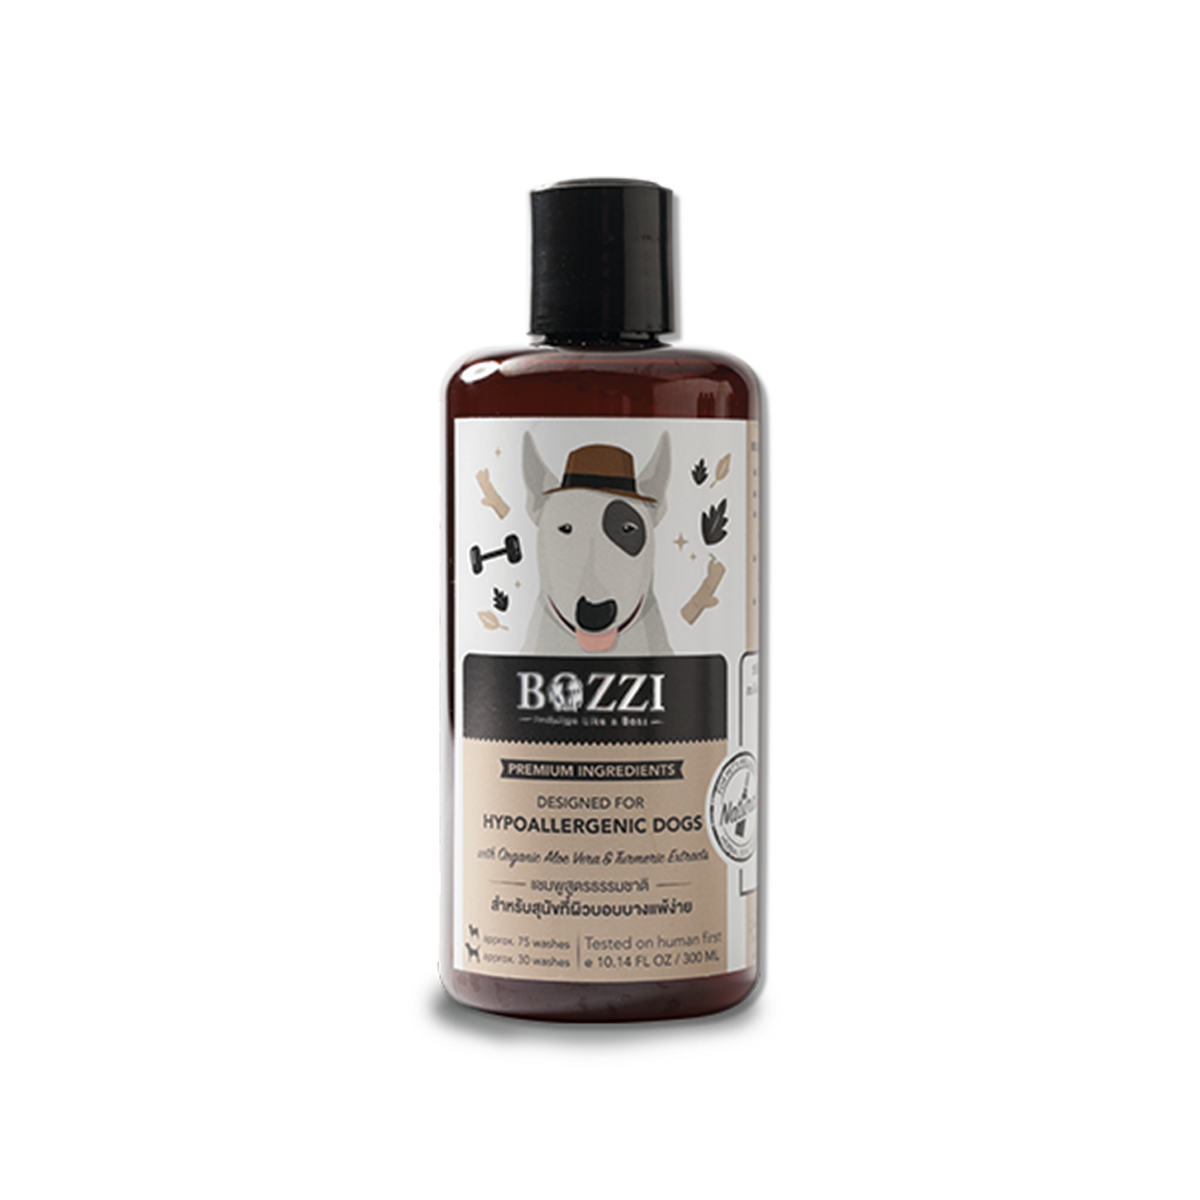 Bozzi Original Shampoo บอซซี่ แชมพูสมุนไพรอ่อนโยนพิเศษ สูตรดั้งเดิม ขนาด 300 มล.